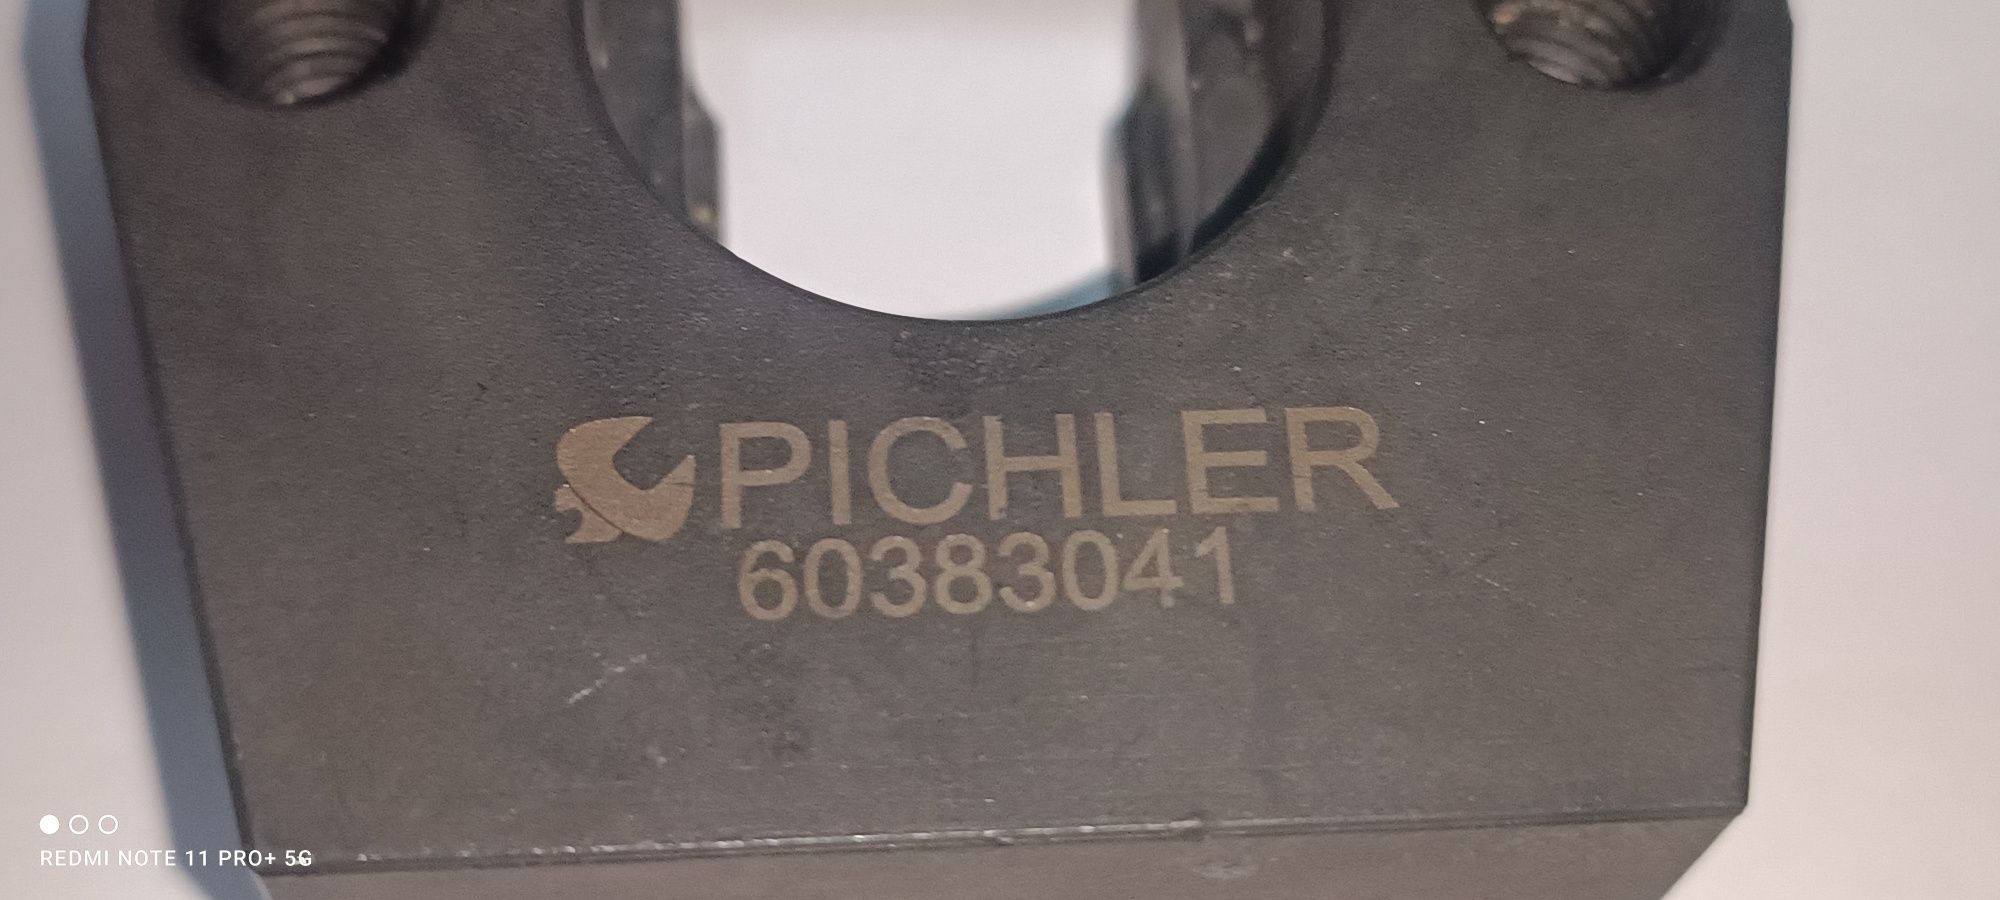 Pichler 60383041 Теглителен адаптор за инжектори